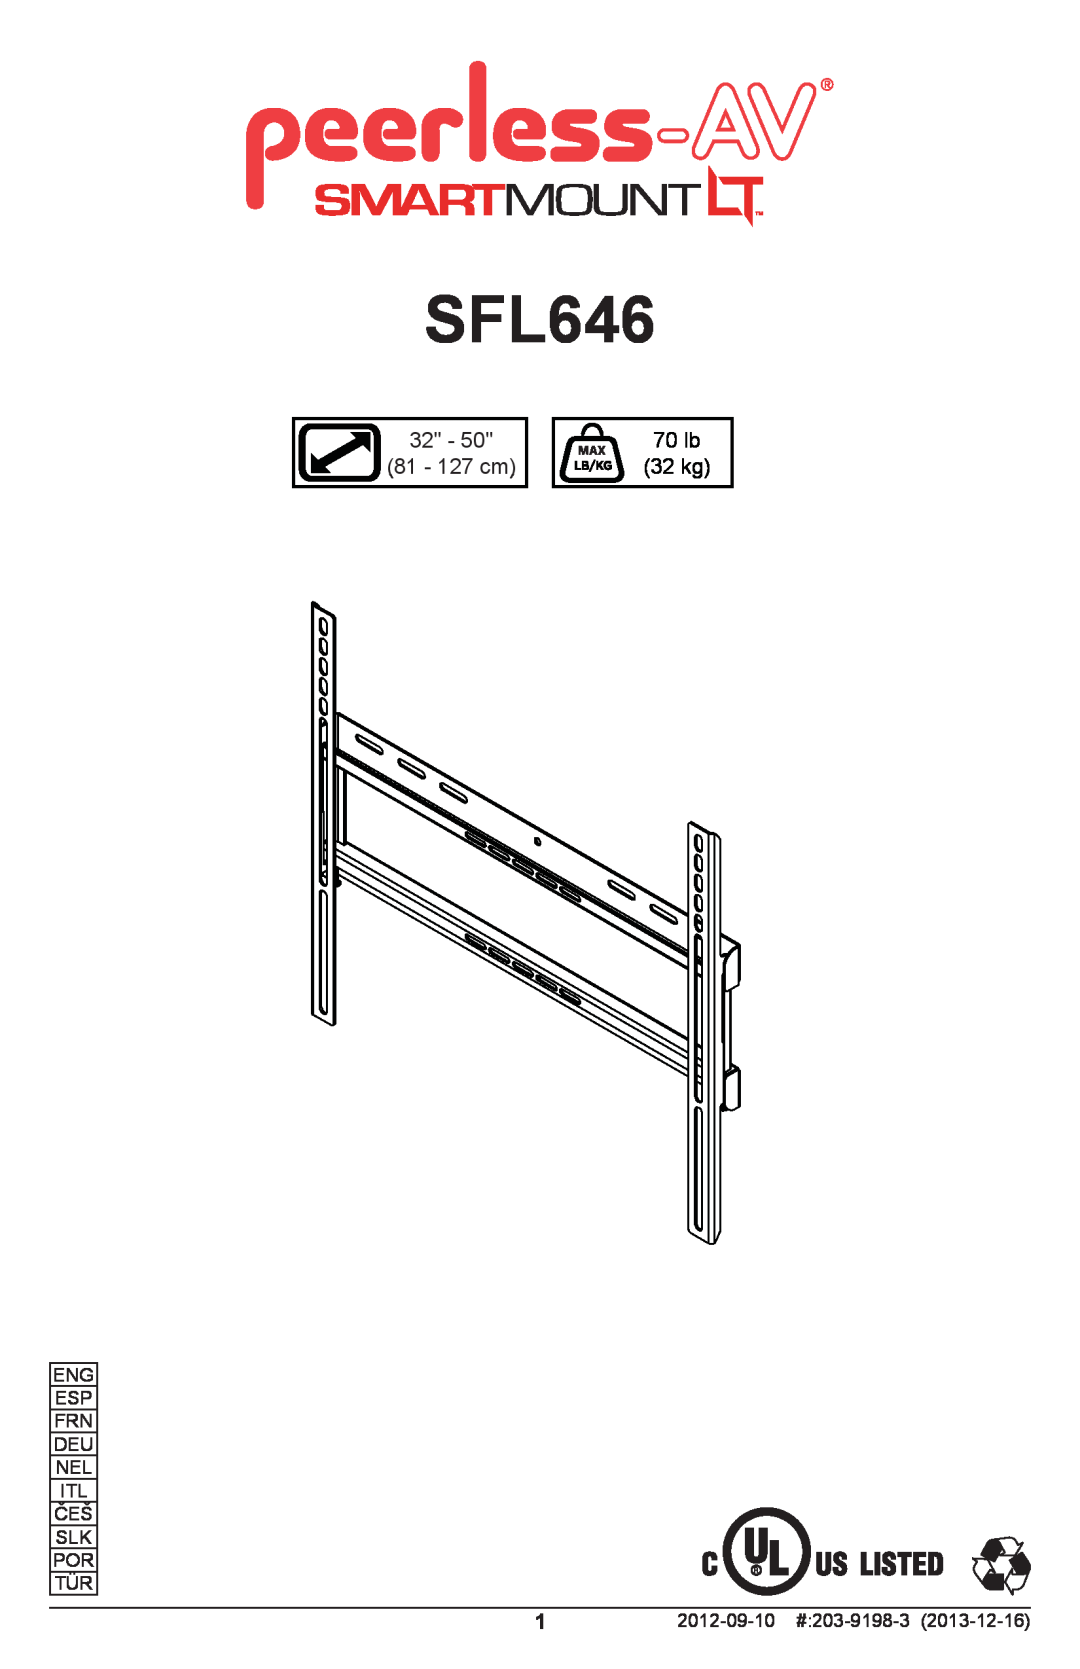 Peerless Industries SFL646 manual 81 - 127 cm, 70 lb, 32 kg 